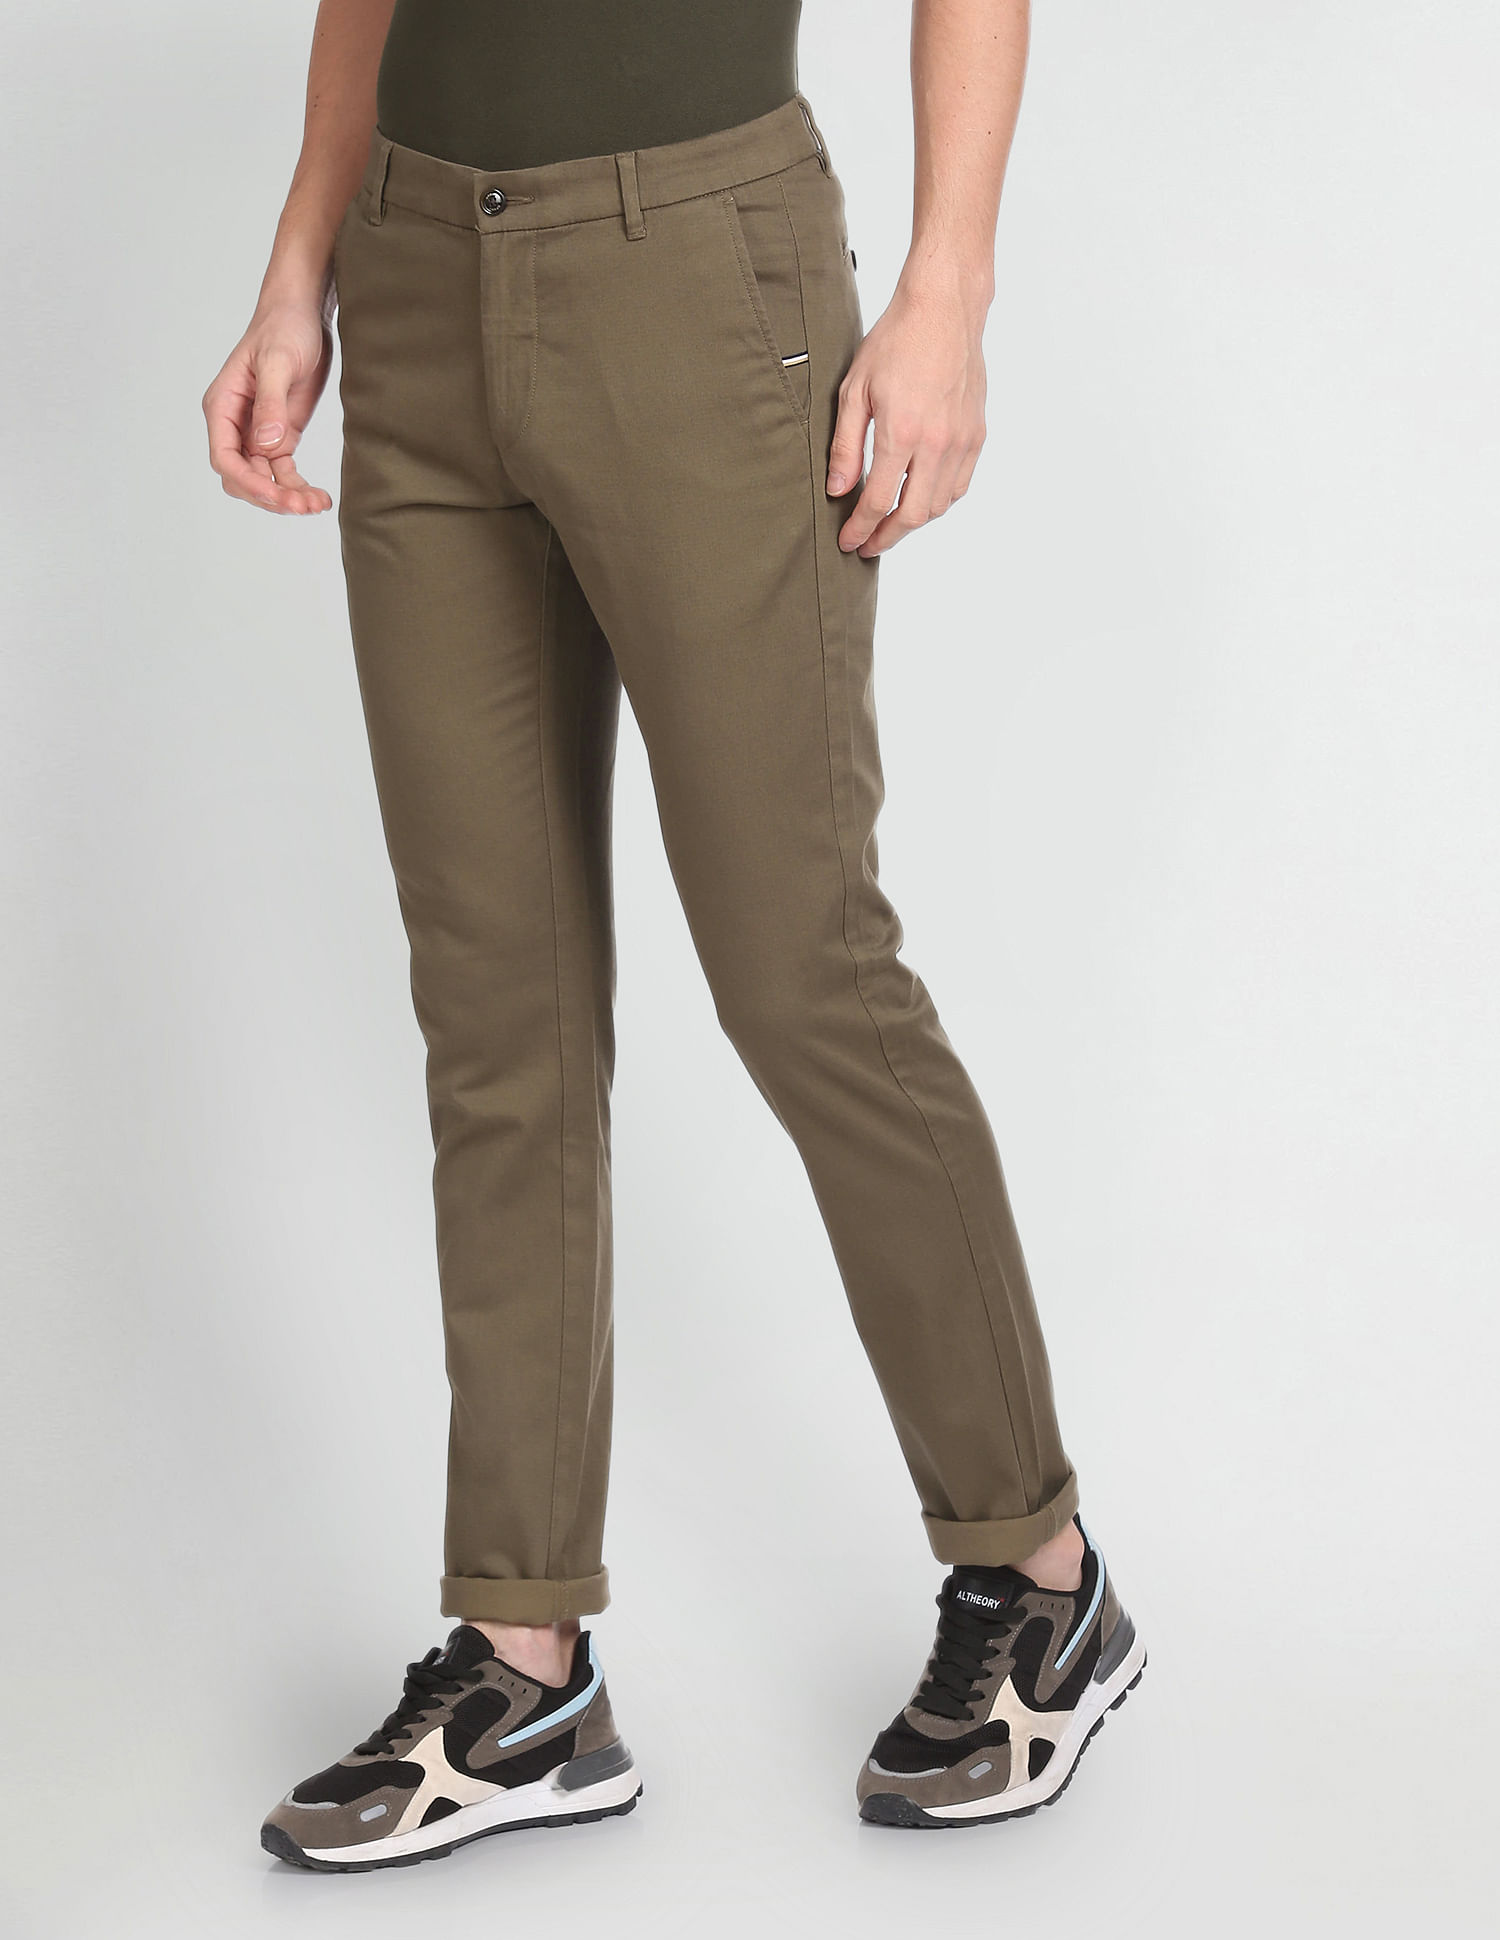 Arrow Beige Trousers - Buy Arrow Beige Trousers online in India